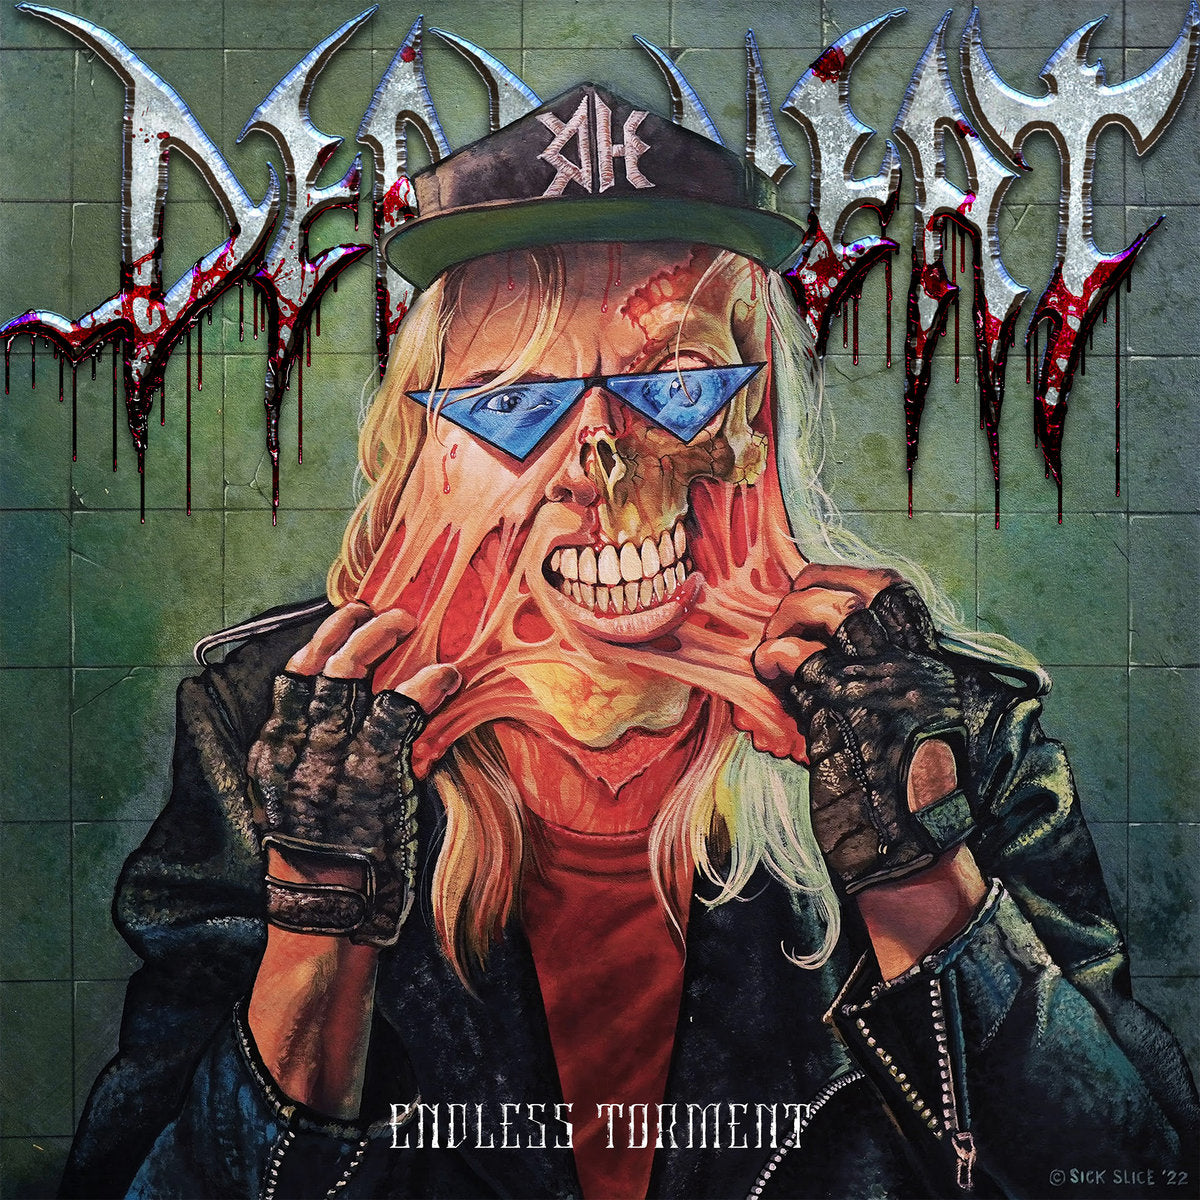 Dead Heat "Endless Torment" 12" Vinyl